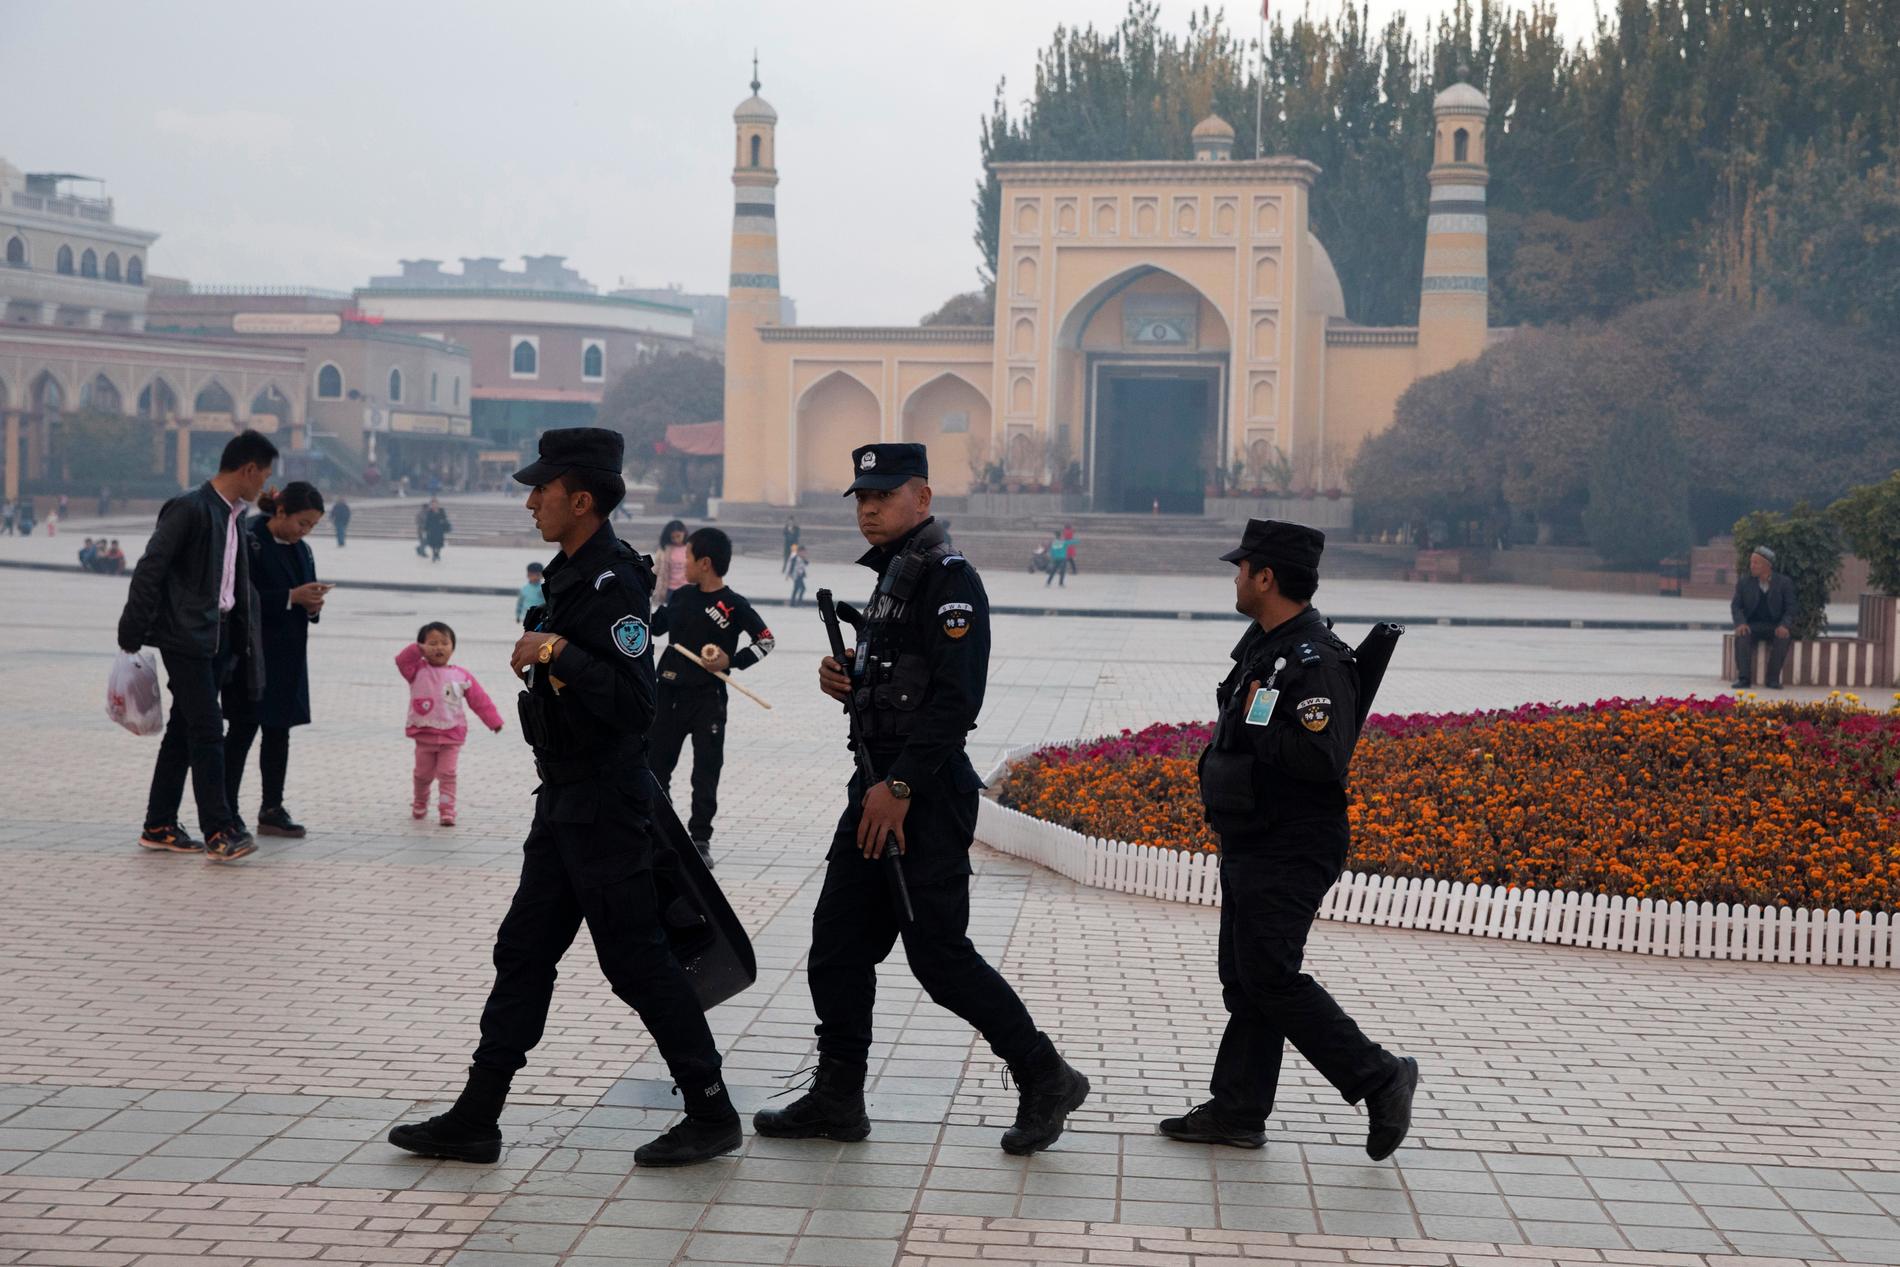 Säkerhetspersonal patrullerar på ett torg i Kashgar i Xinjiang. Bild från 2017.